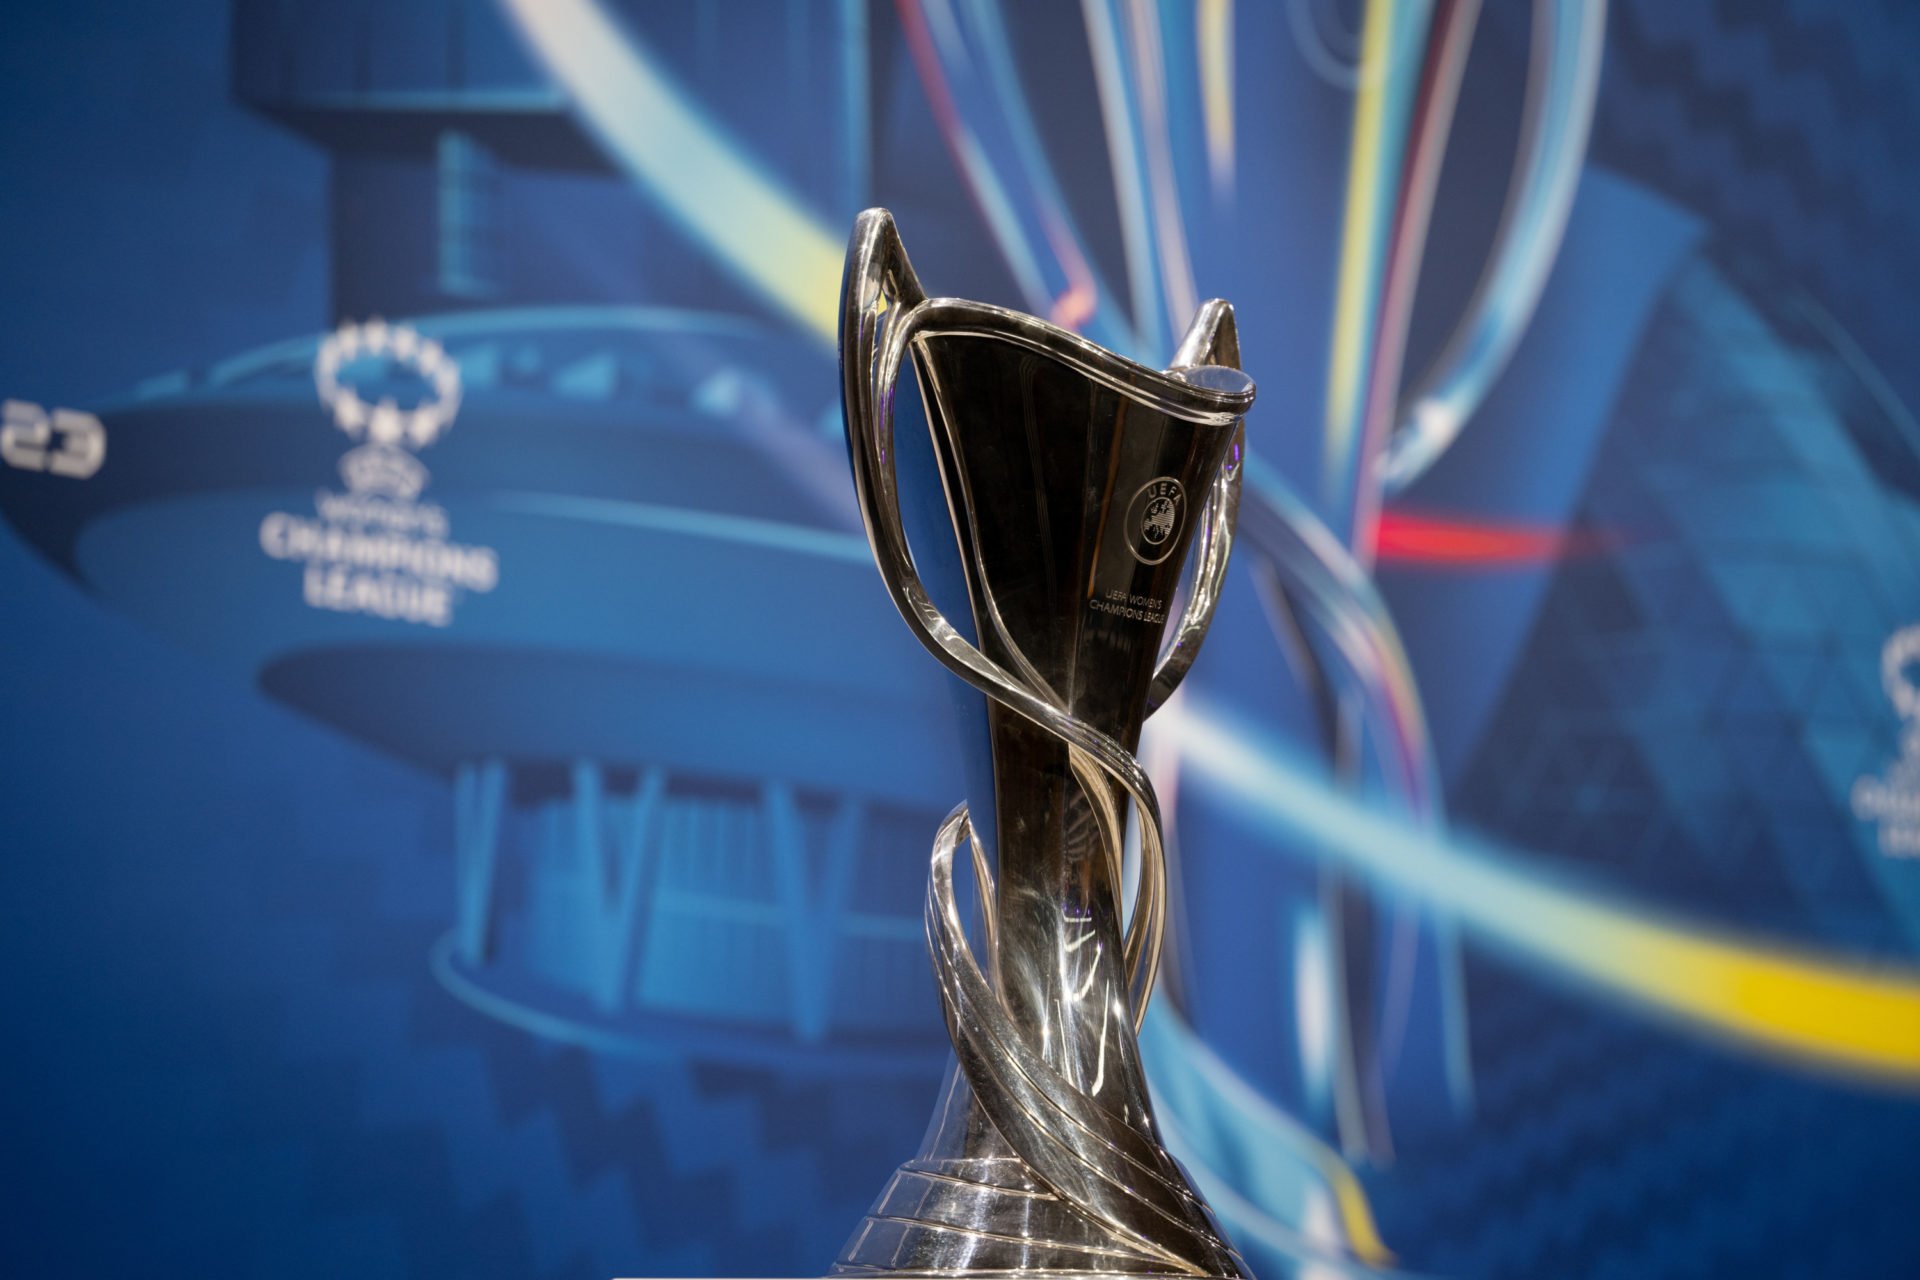 UEFA Women's Champions League 2022/23 Quarter-finals and Semi-finals Draw